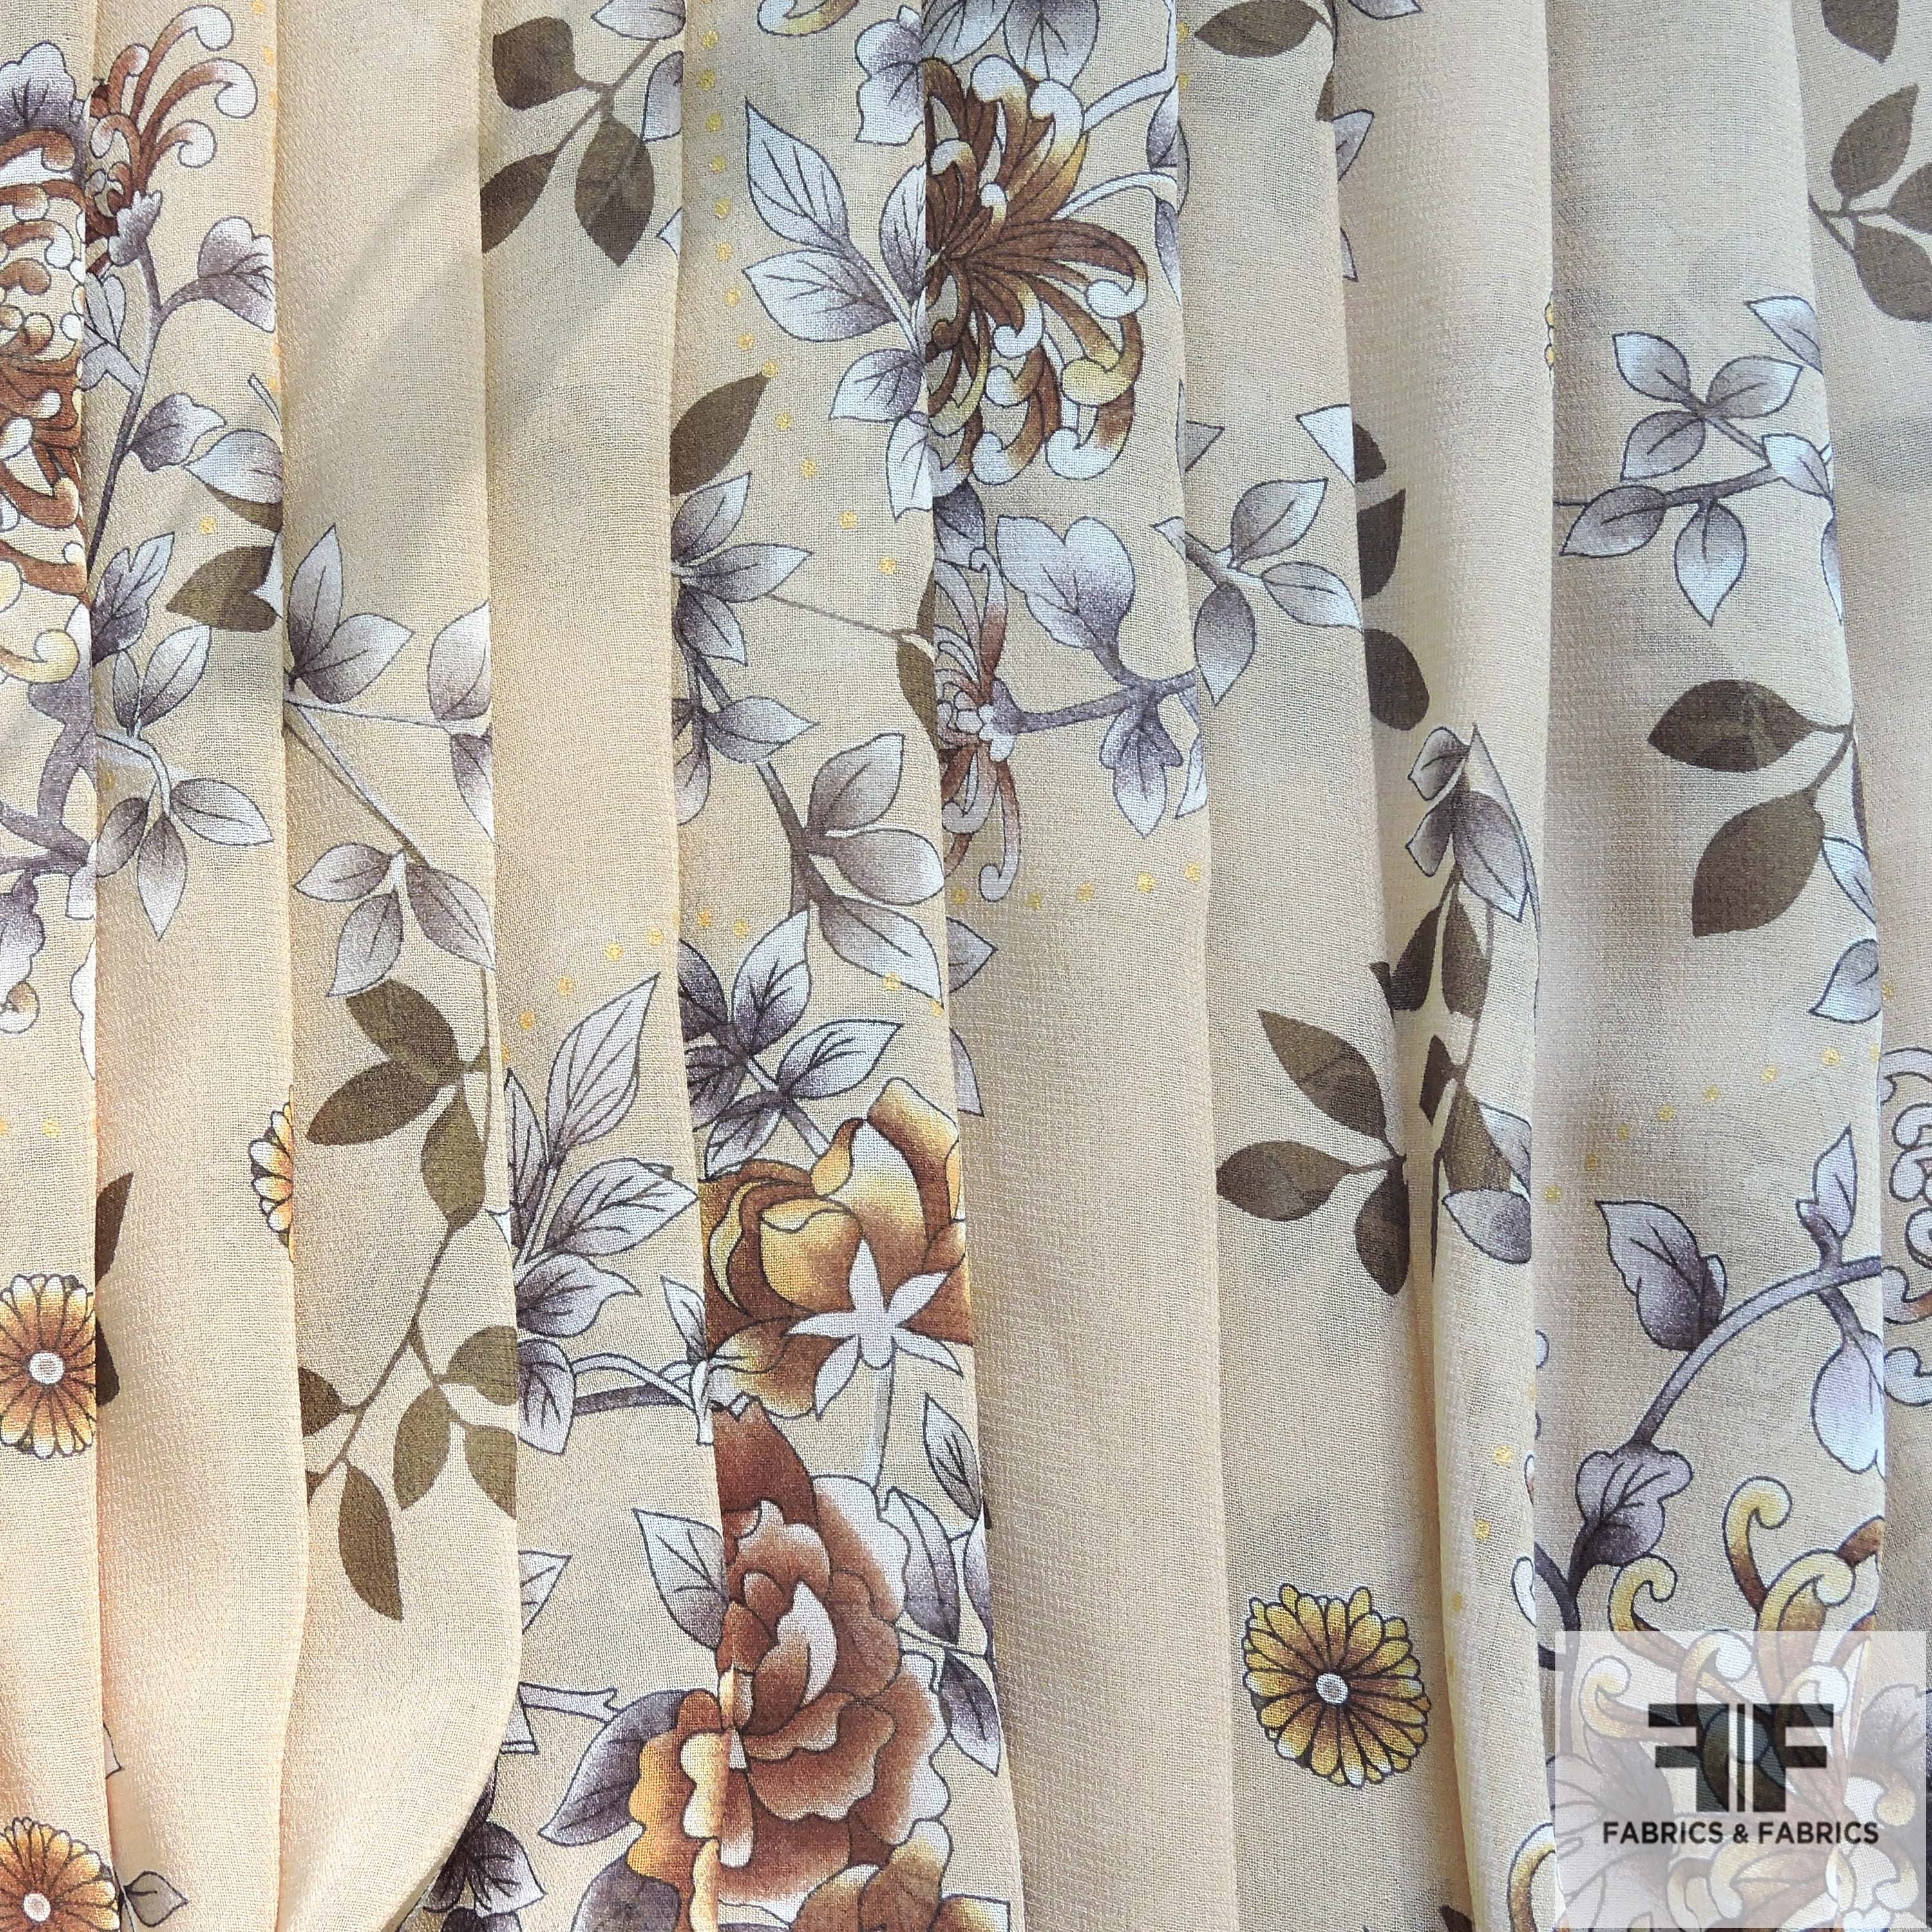 Floral Printed Silk Chiffon - Brown/Tan/Natural